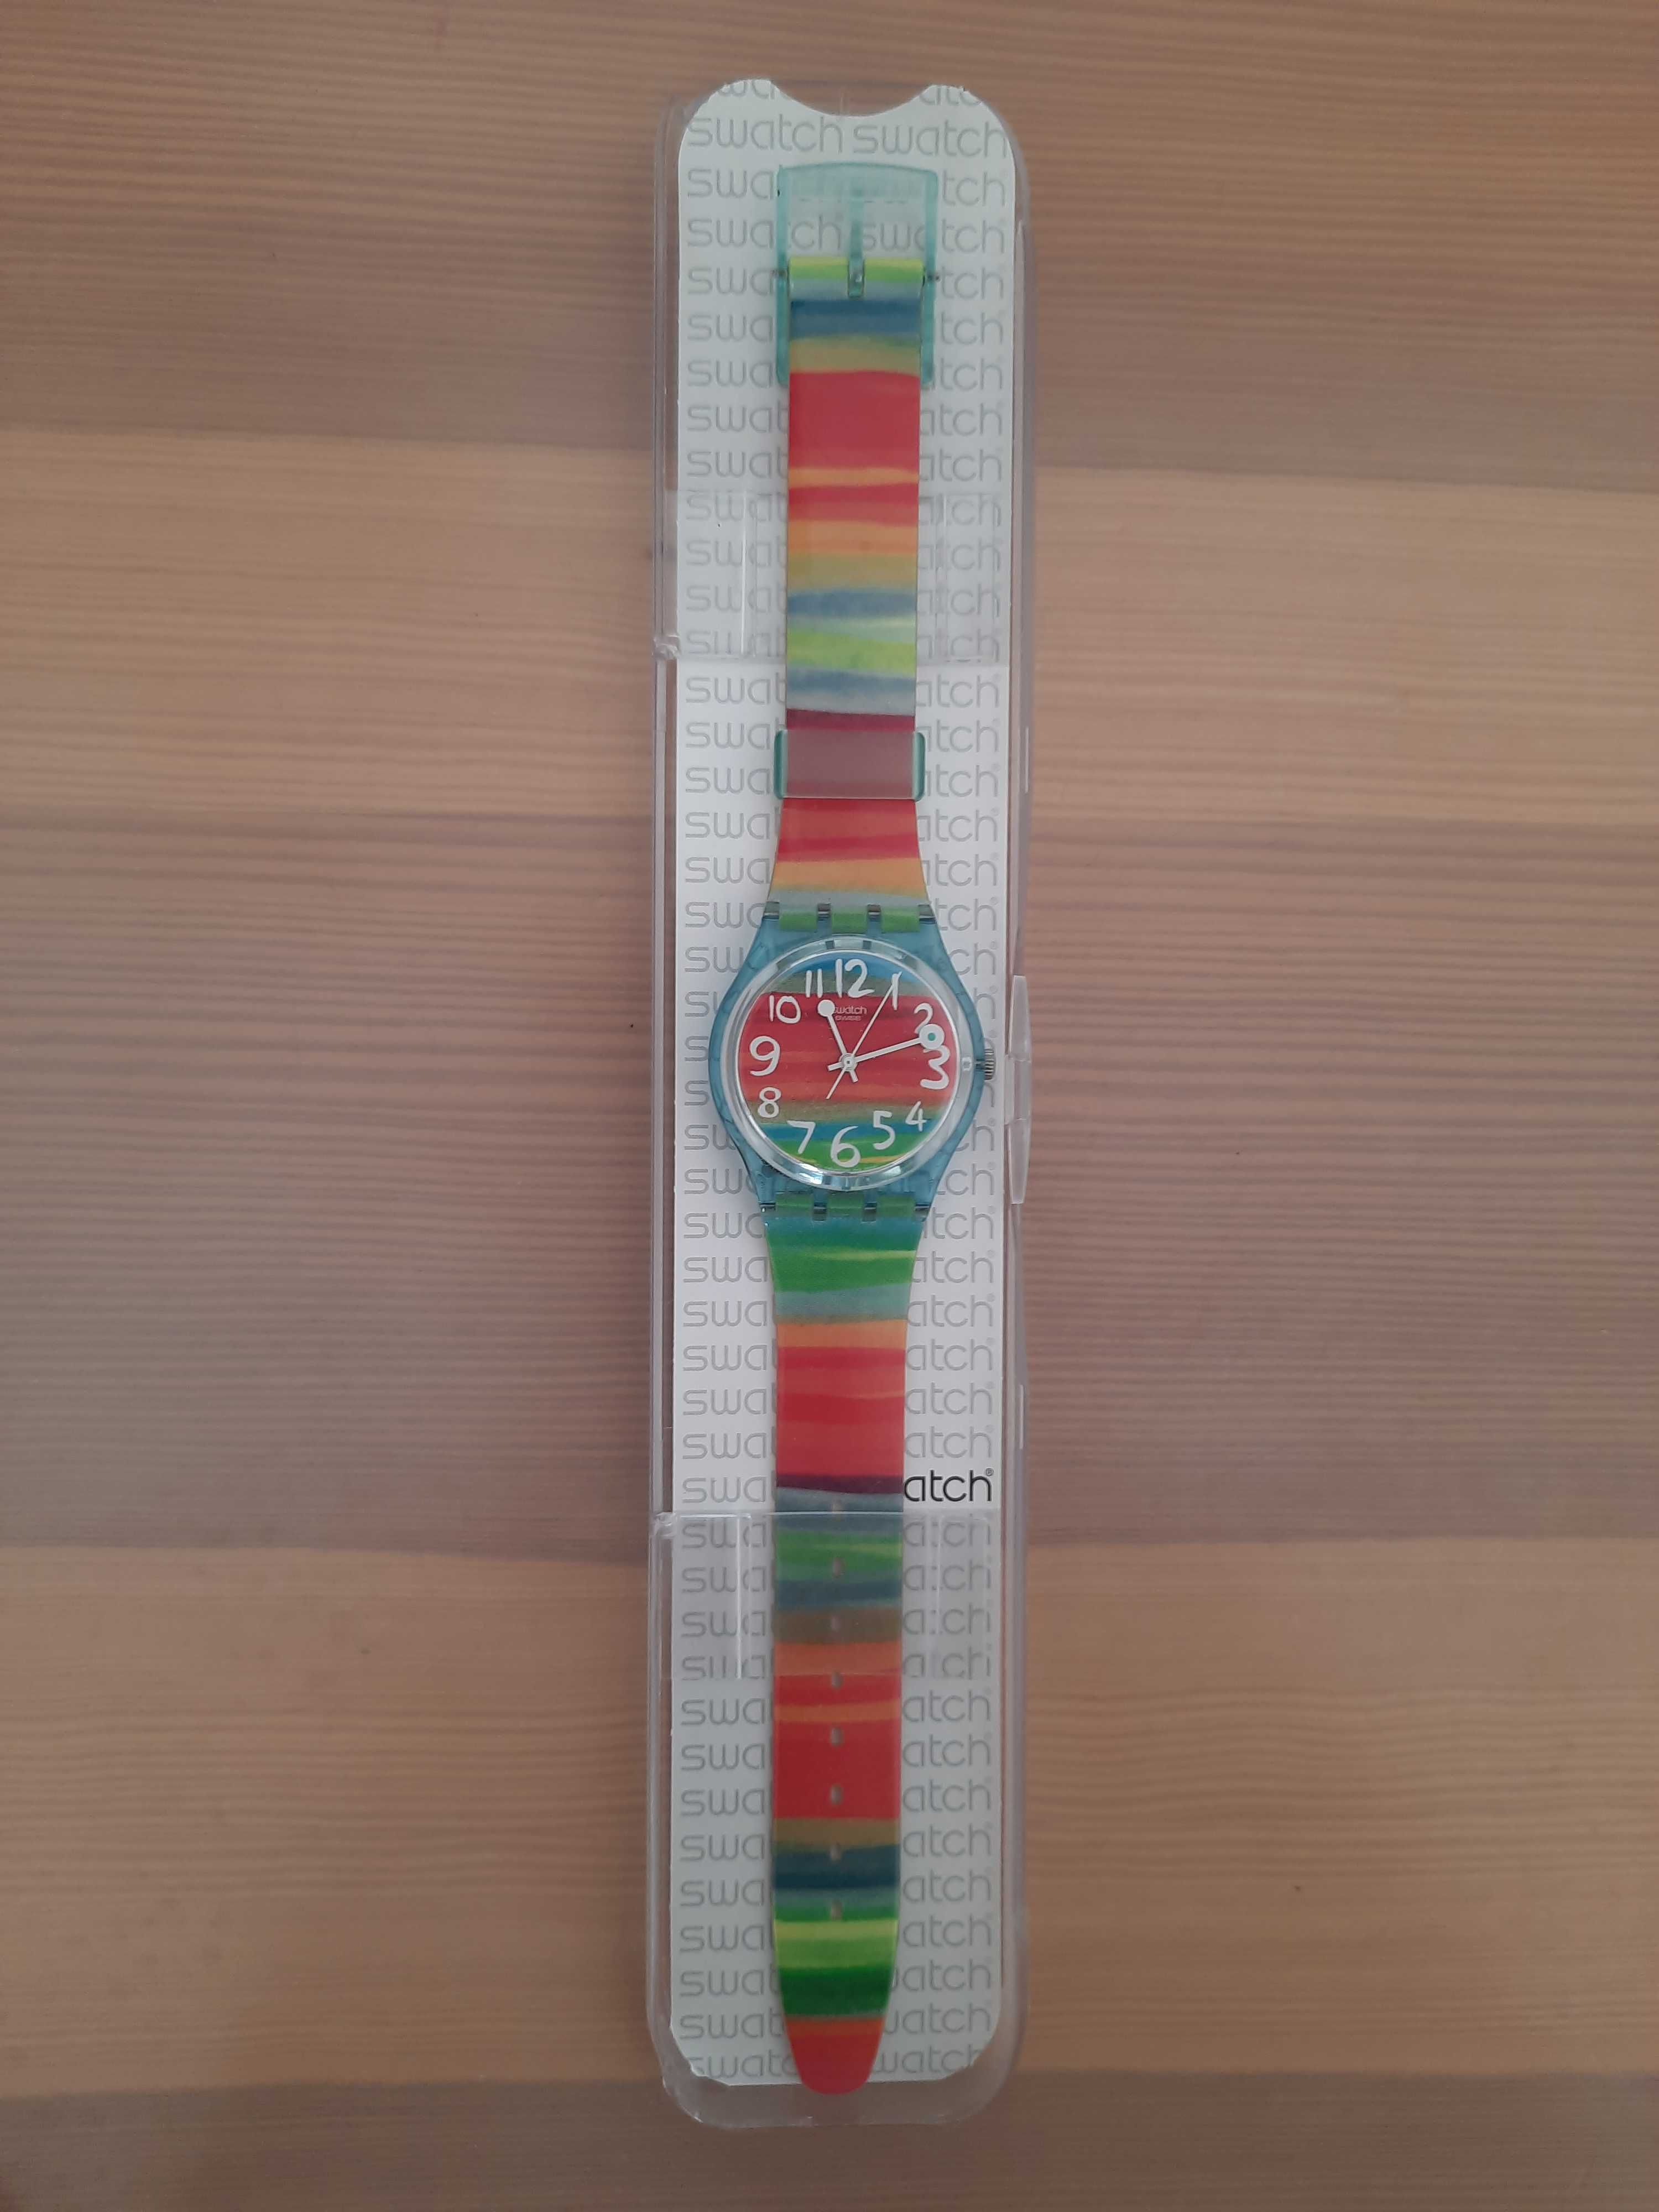 Zegarek Swatch COLOR THE SKY GS124 kolorowy tęcza